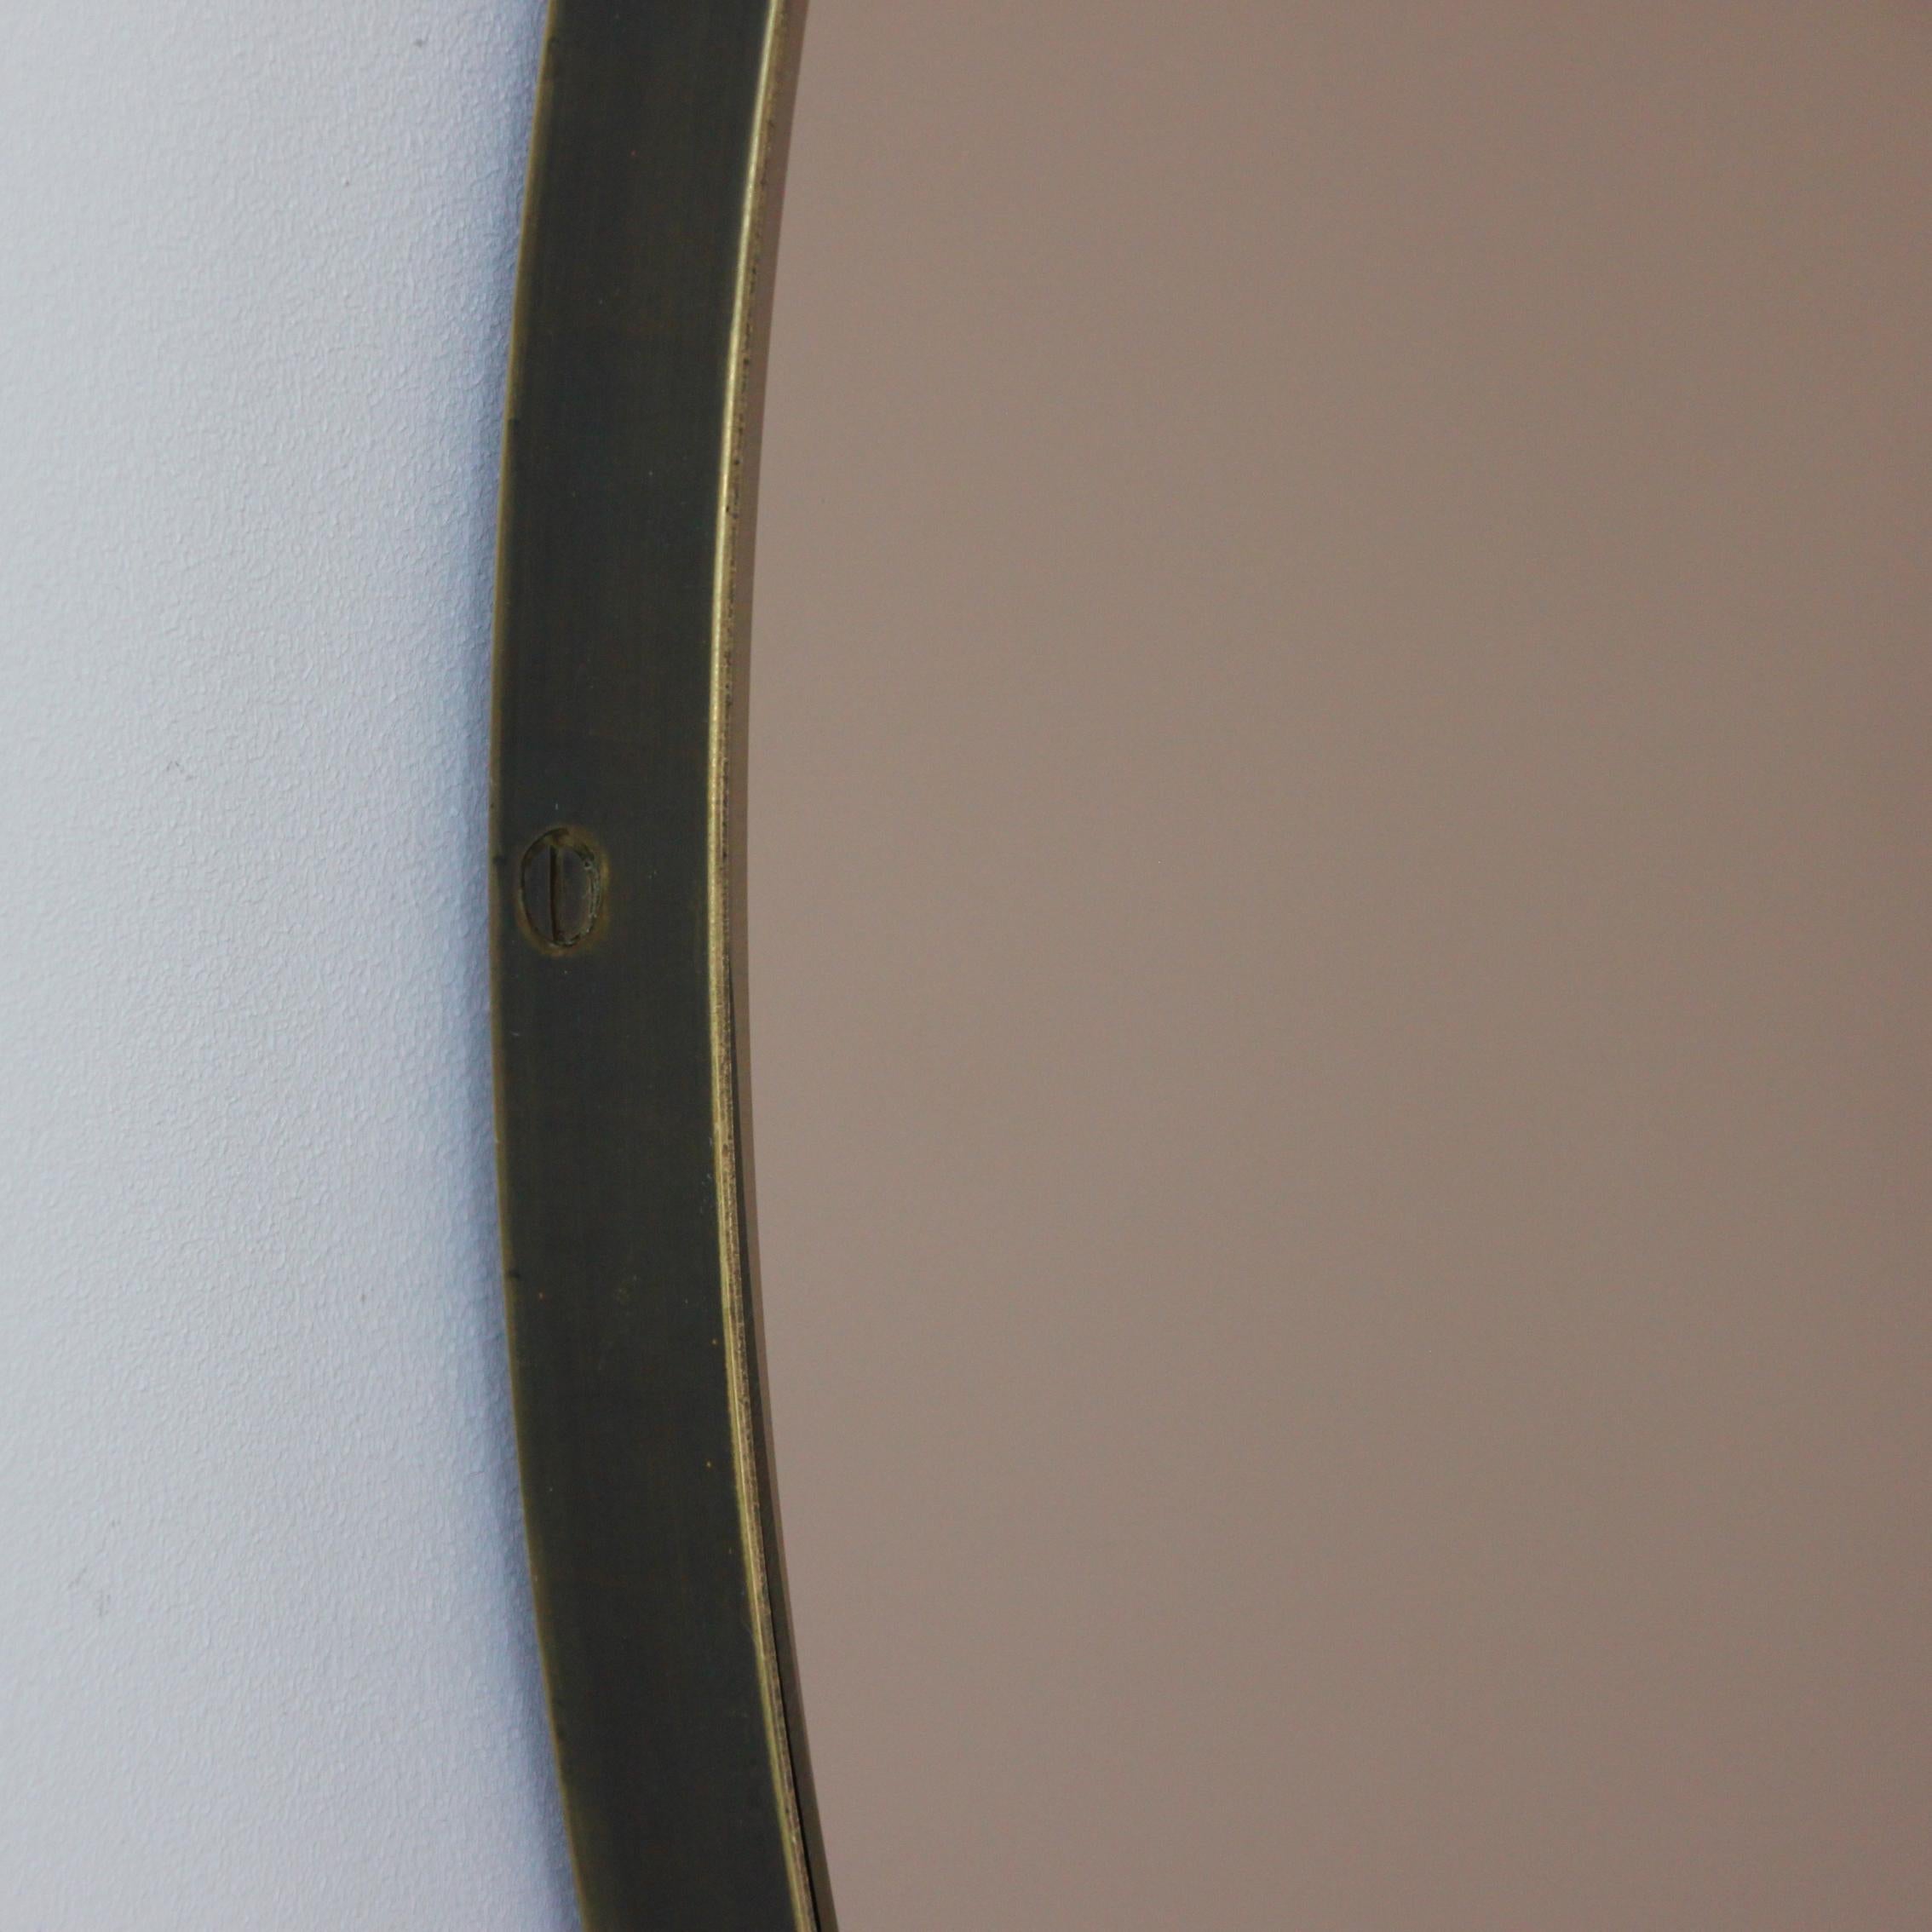 Miroir rond Orbis™ contemporain teinté bronze avec un cadre en laiton massif à la finition patinée bronze. Conçu et fabriqué à la main à Londres, au Royaume-Uni.

Les miroirs de taille moyenne, grande et extra-large (60, 80 et 100 cm) sont équipés